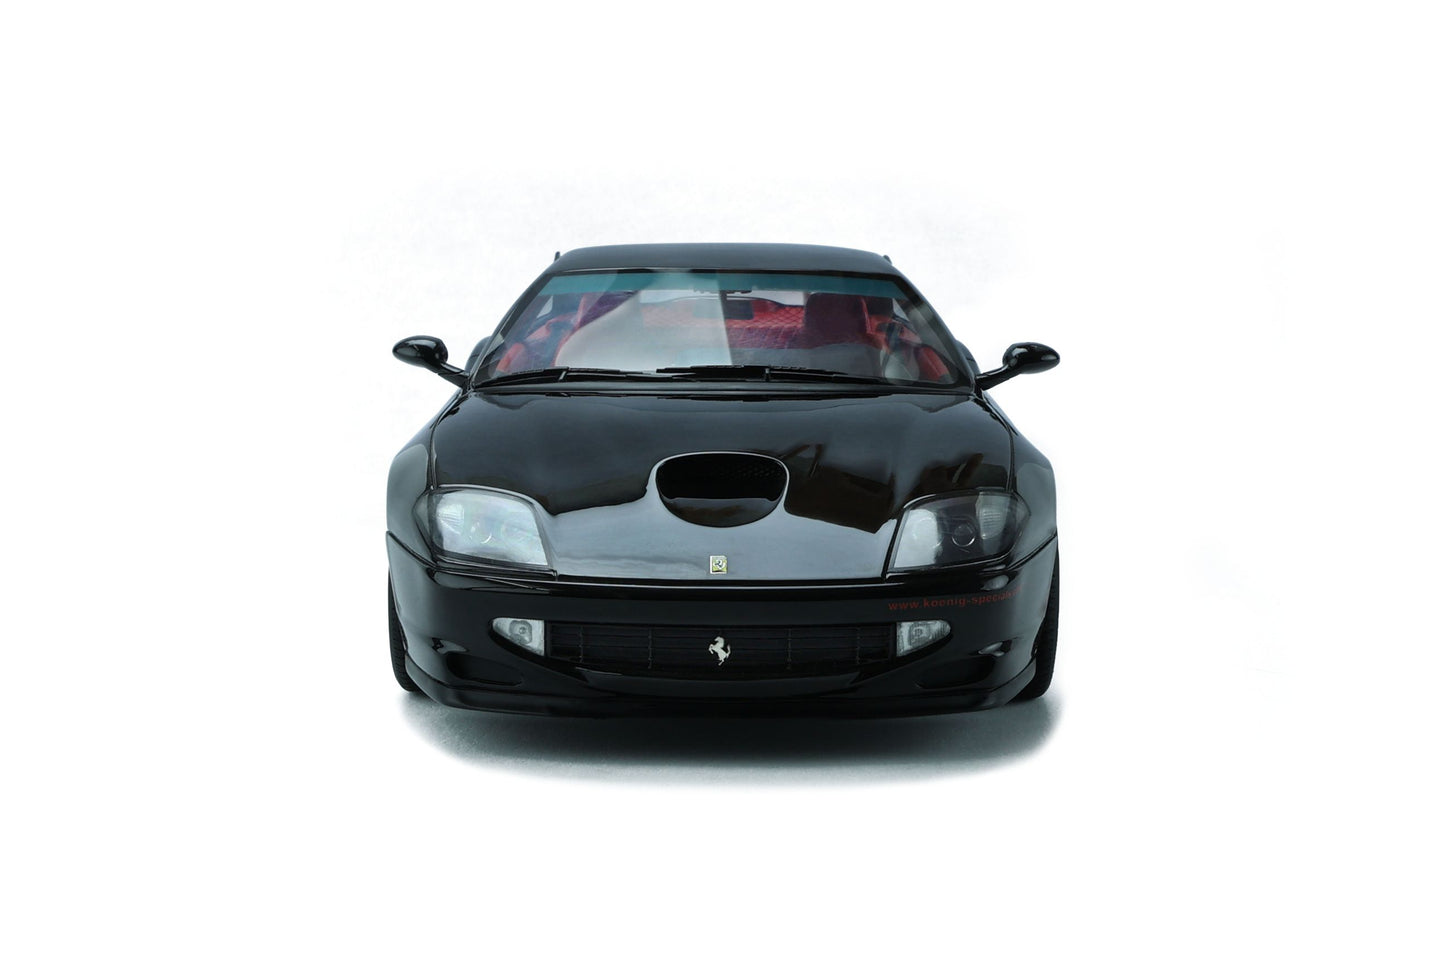 GT Spirit - Koenig Specials Ferrari 550 (Nero Black) 1:18 Scale Model Car